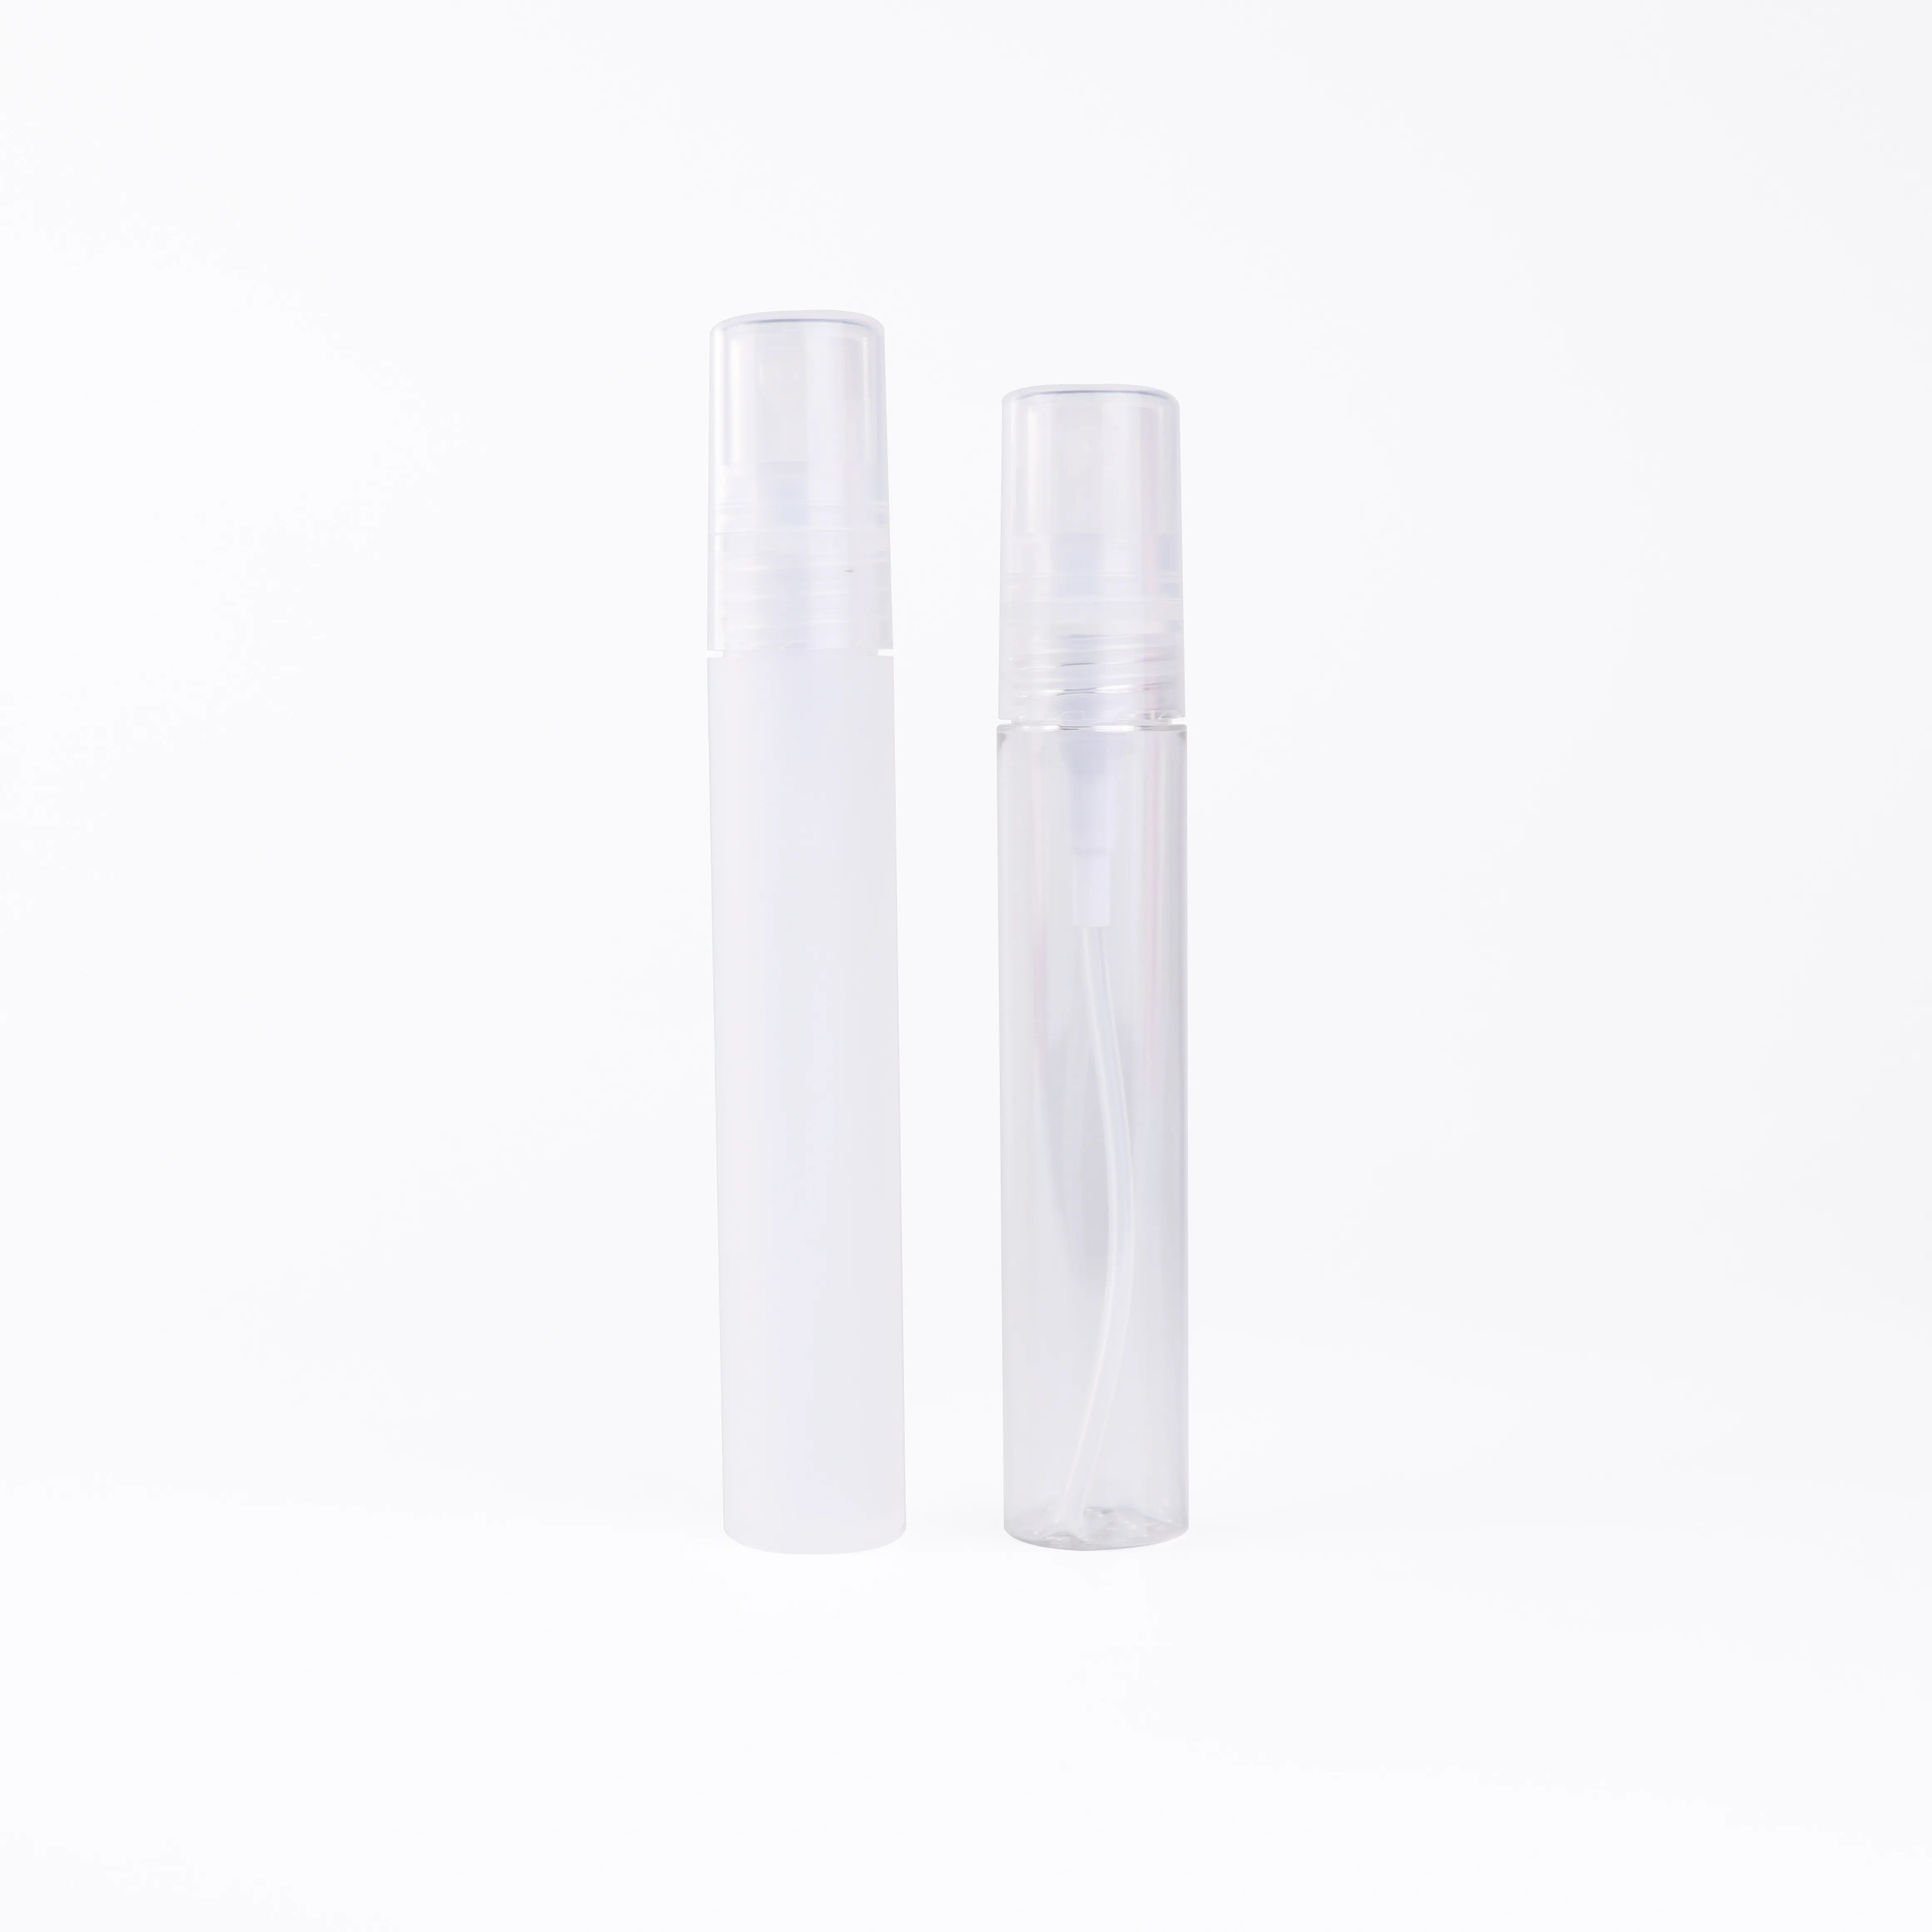 15ml 20ml plastic refillable travel perfume spray bottle